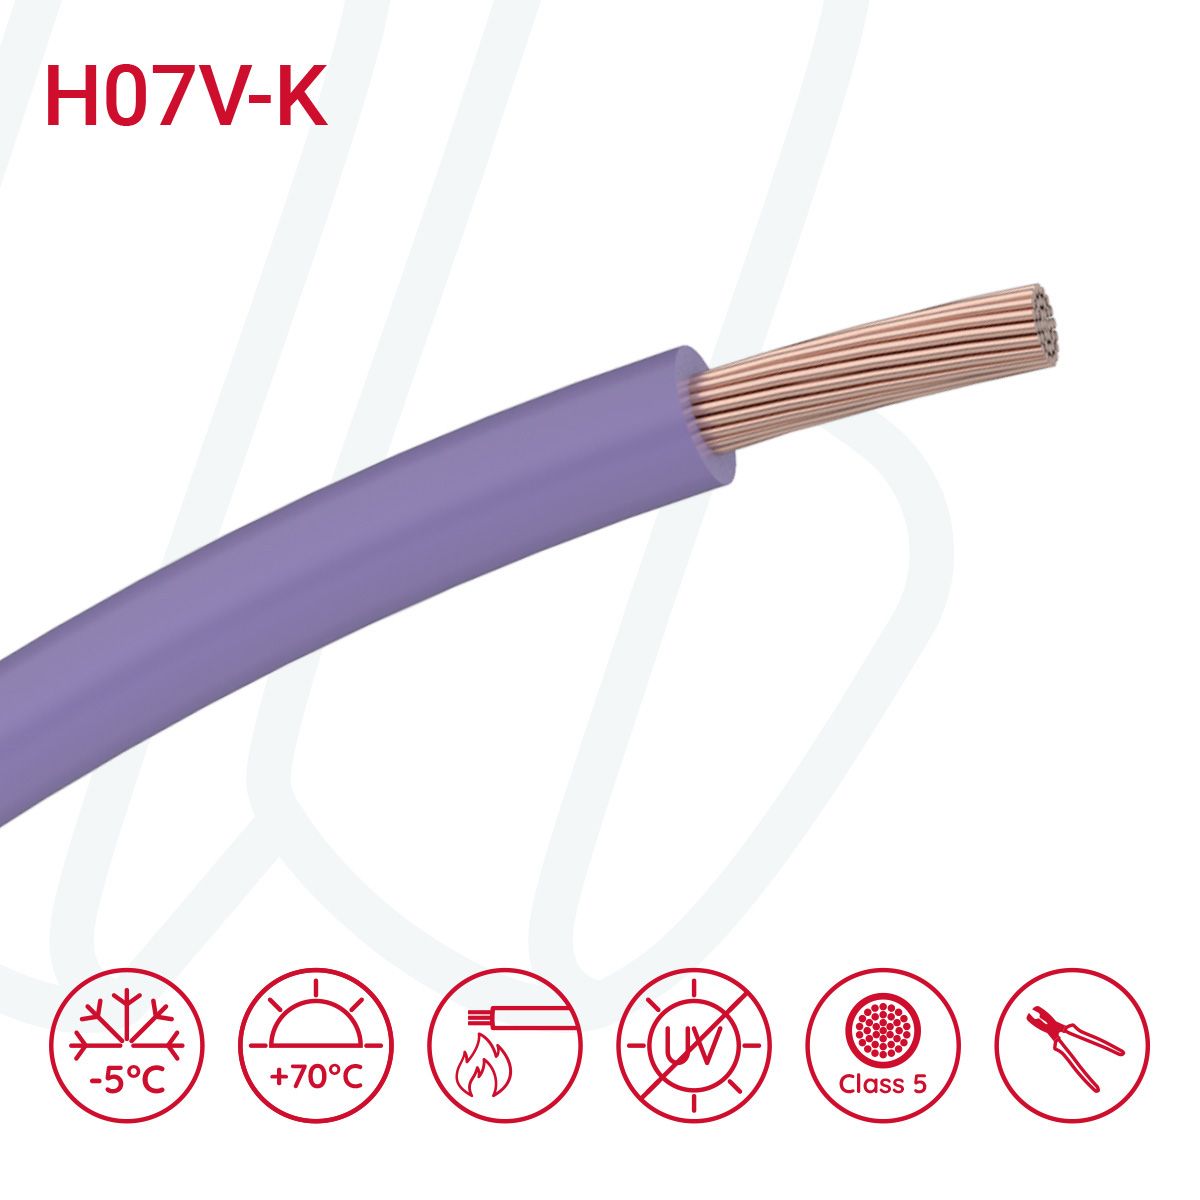 Провід монтажний гнучкий H07V-K 16 мм² фіолетовий, 01, 16